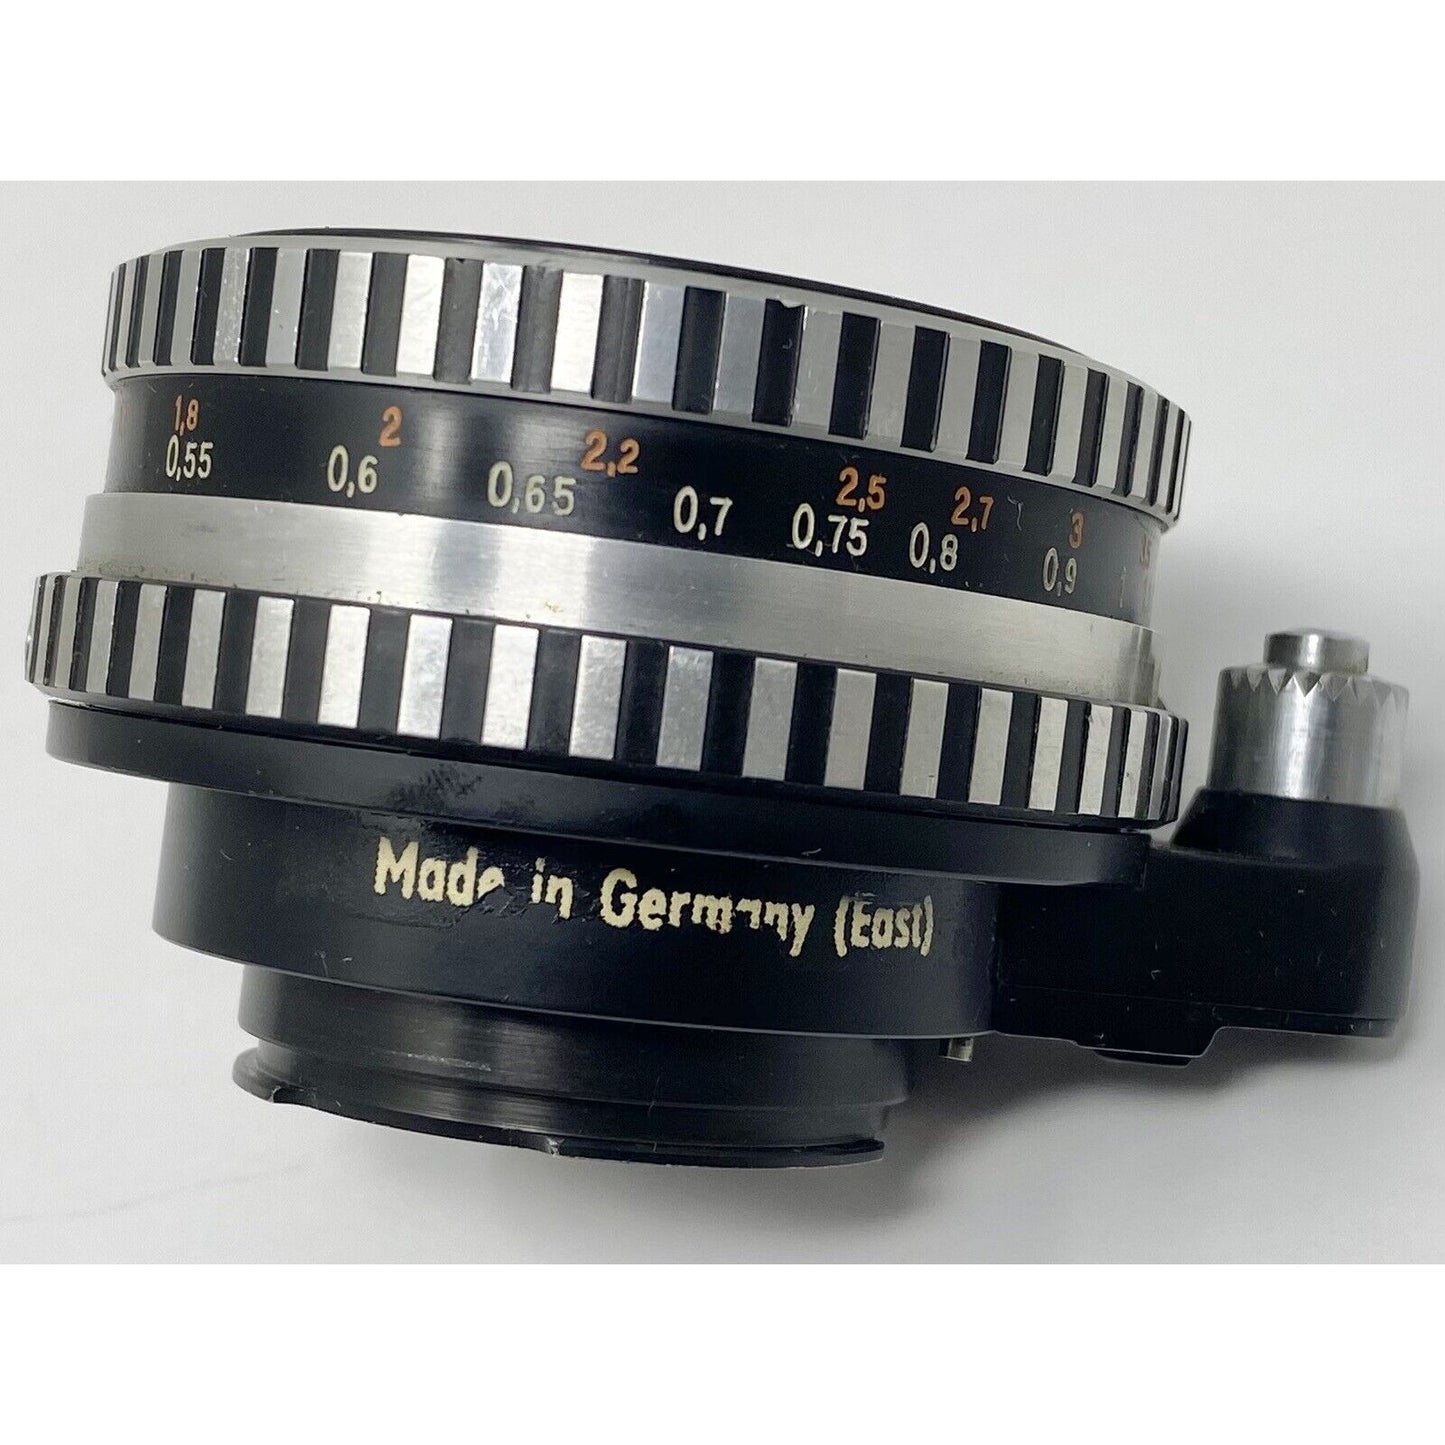 Vtg Carl Zeiss Jena Pancolar IQ2/50 Lens Bellows Mount Clamp Slide Copier Bundle